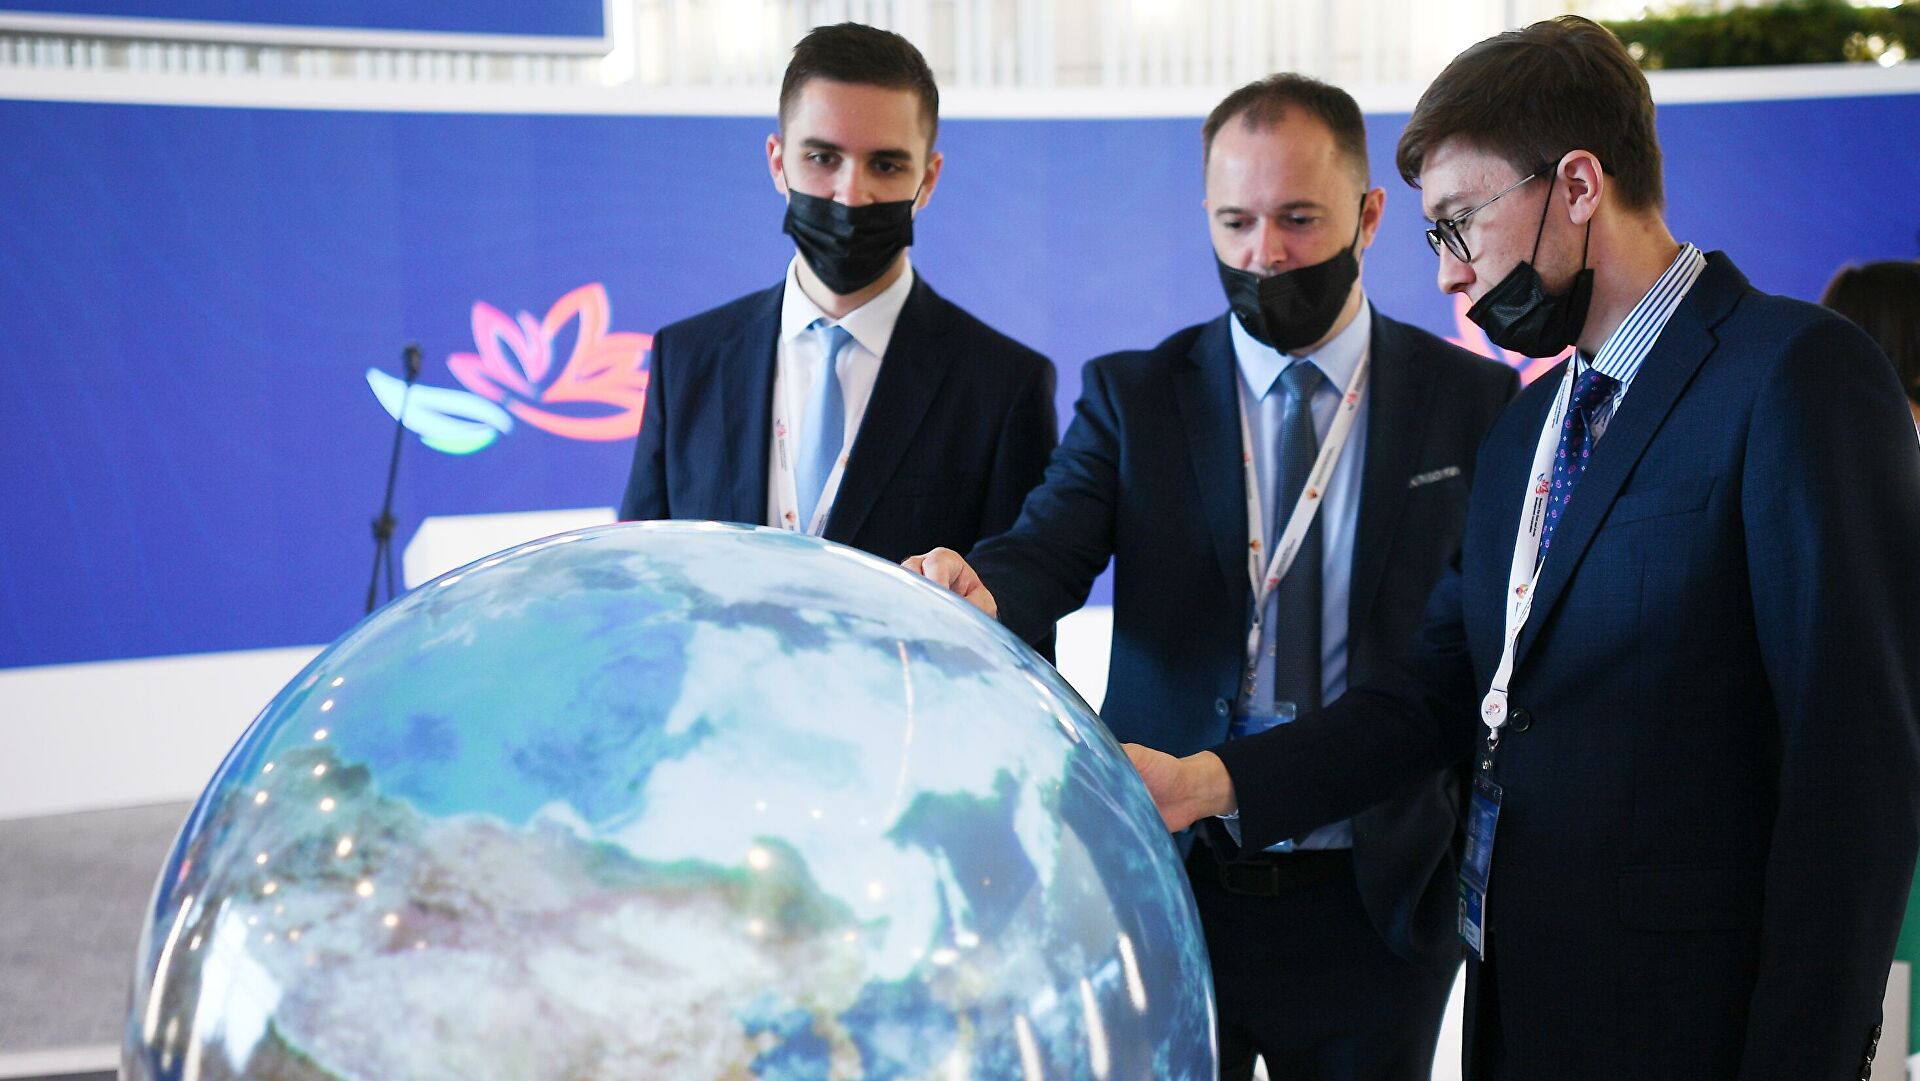 Чекунков: Владивосток останется основной площадкой ВЭФ в обозримом будущем